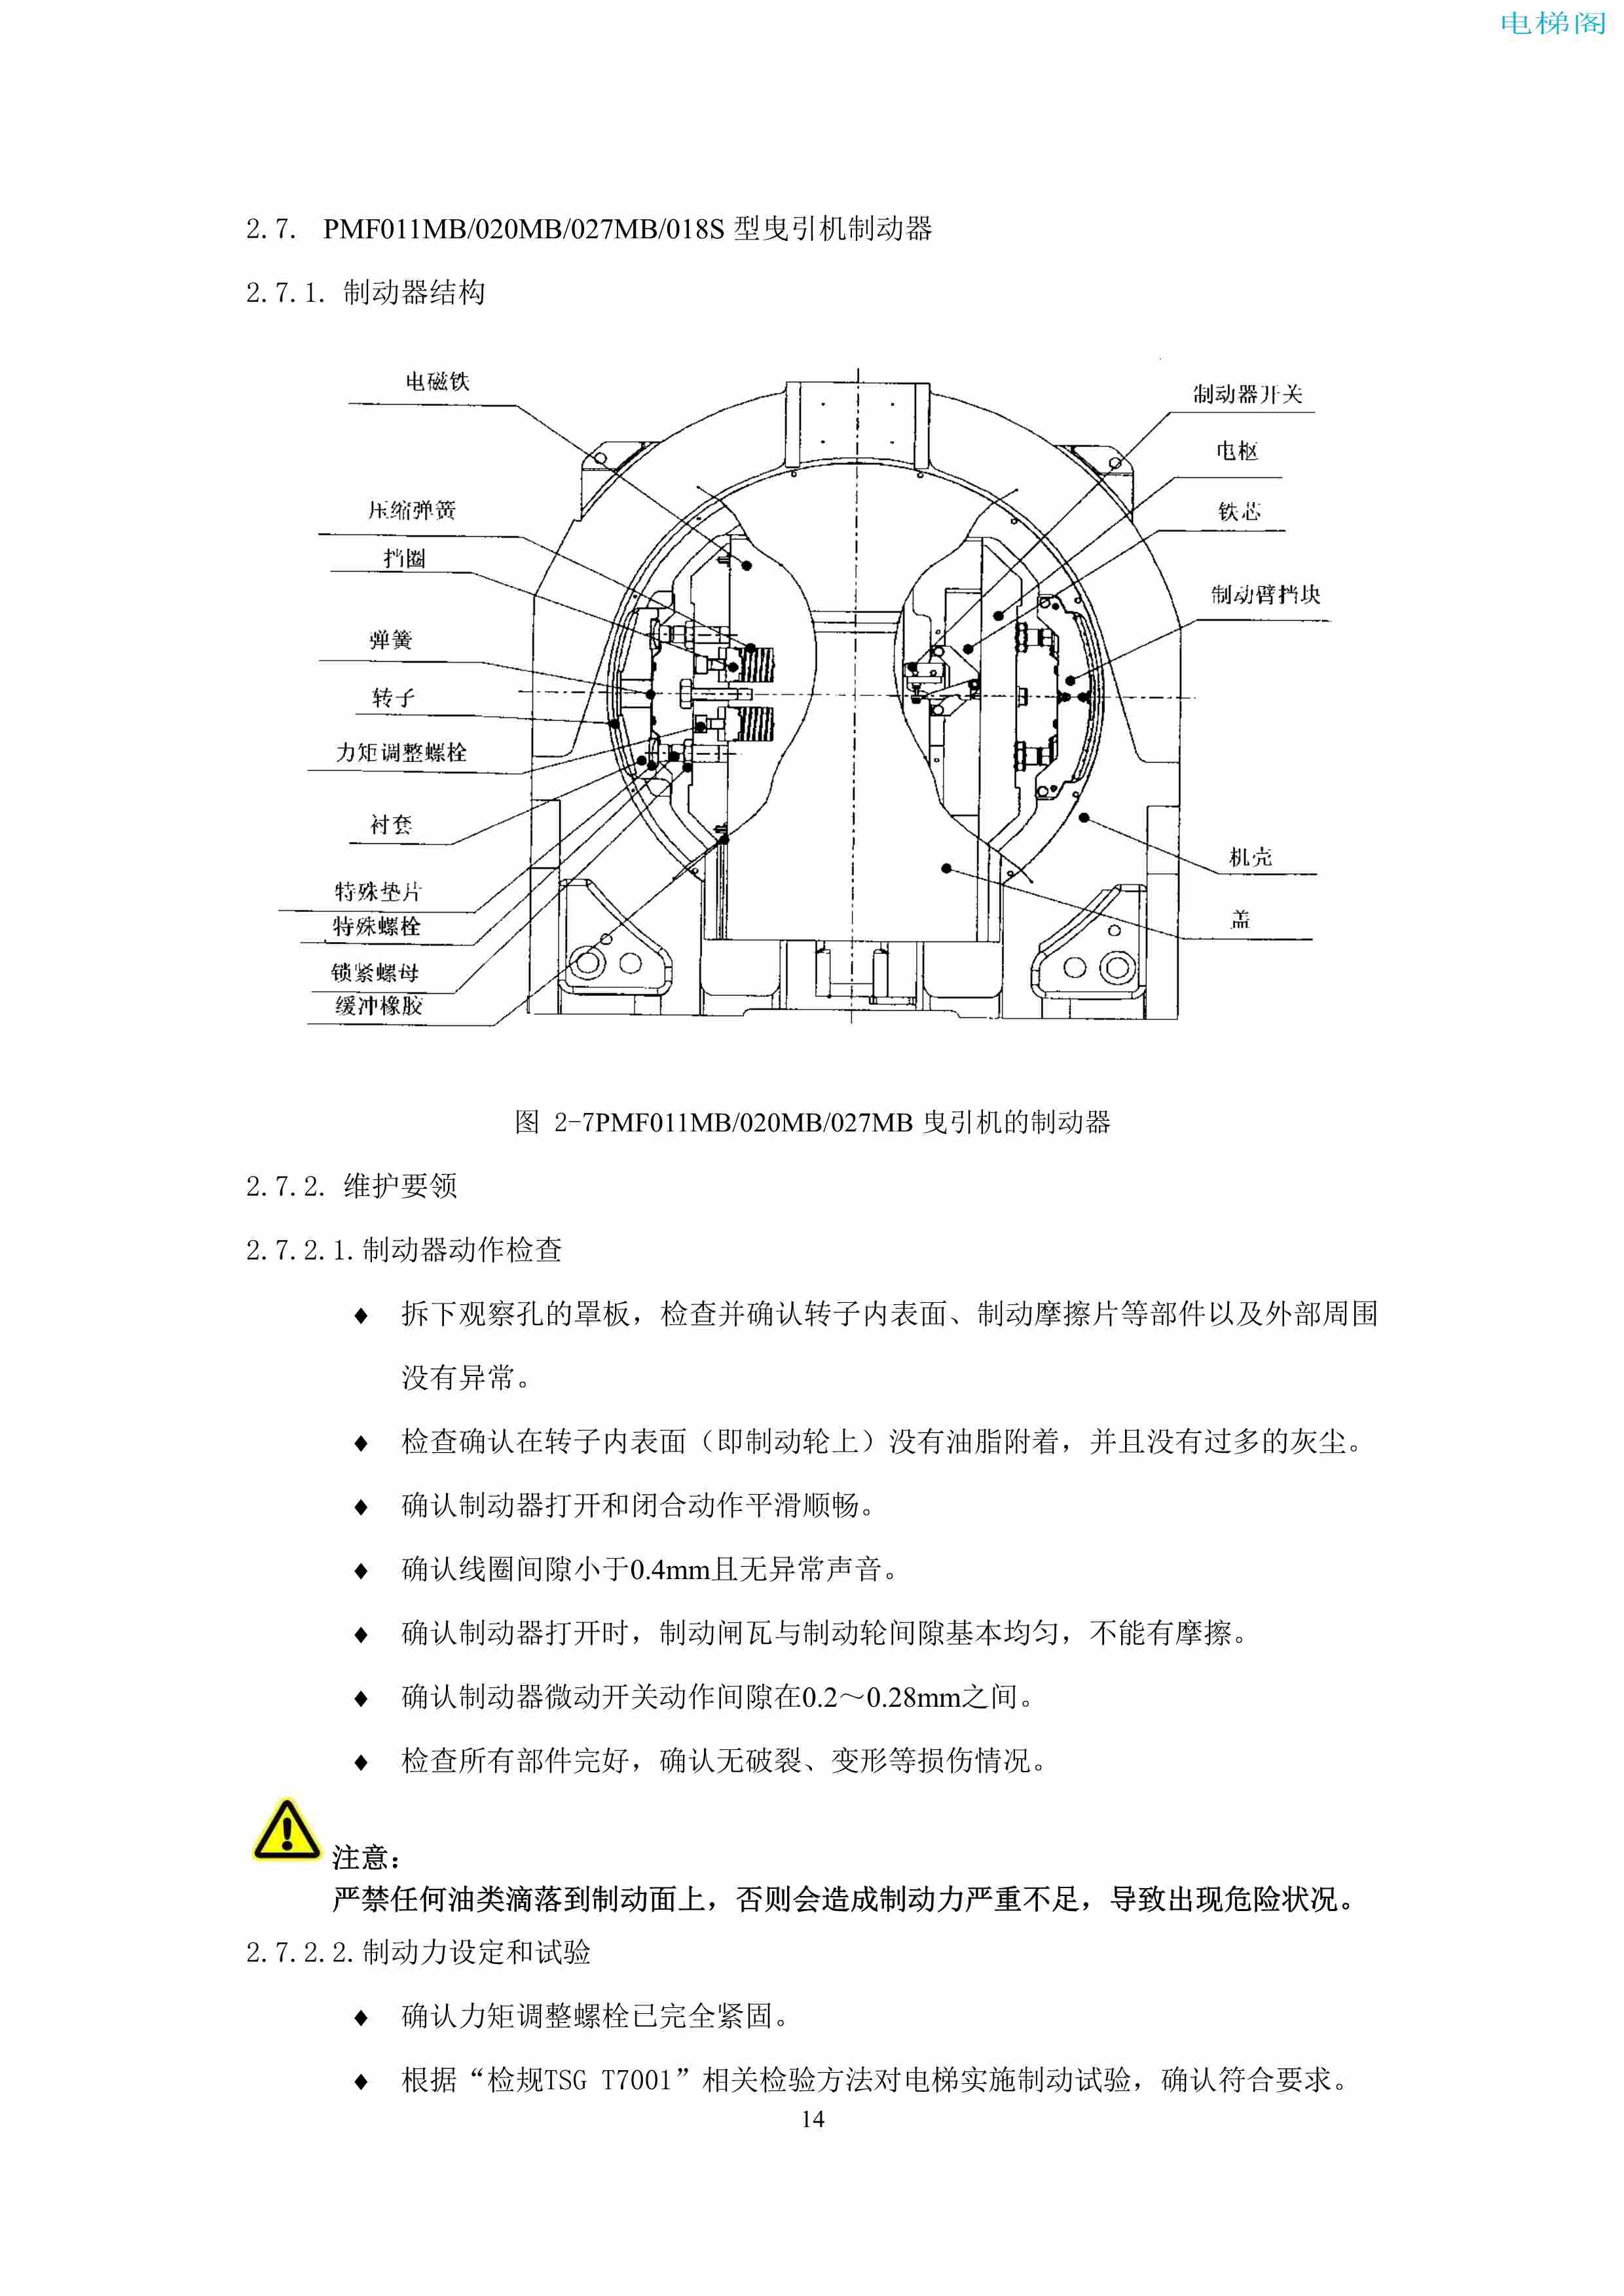 上海三菱电梯有限公司电梯制动器维护作业要领汇编_16.jpg